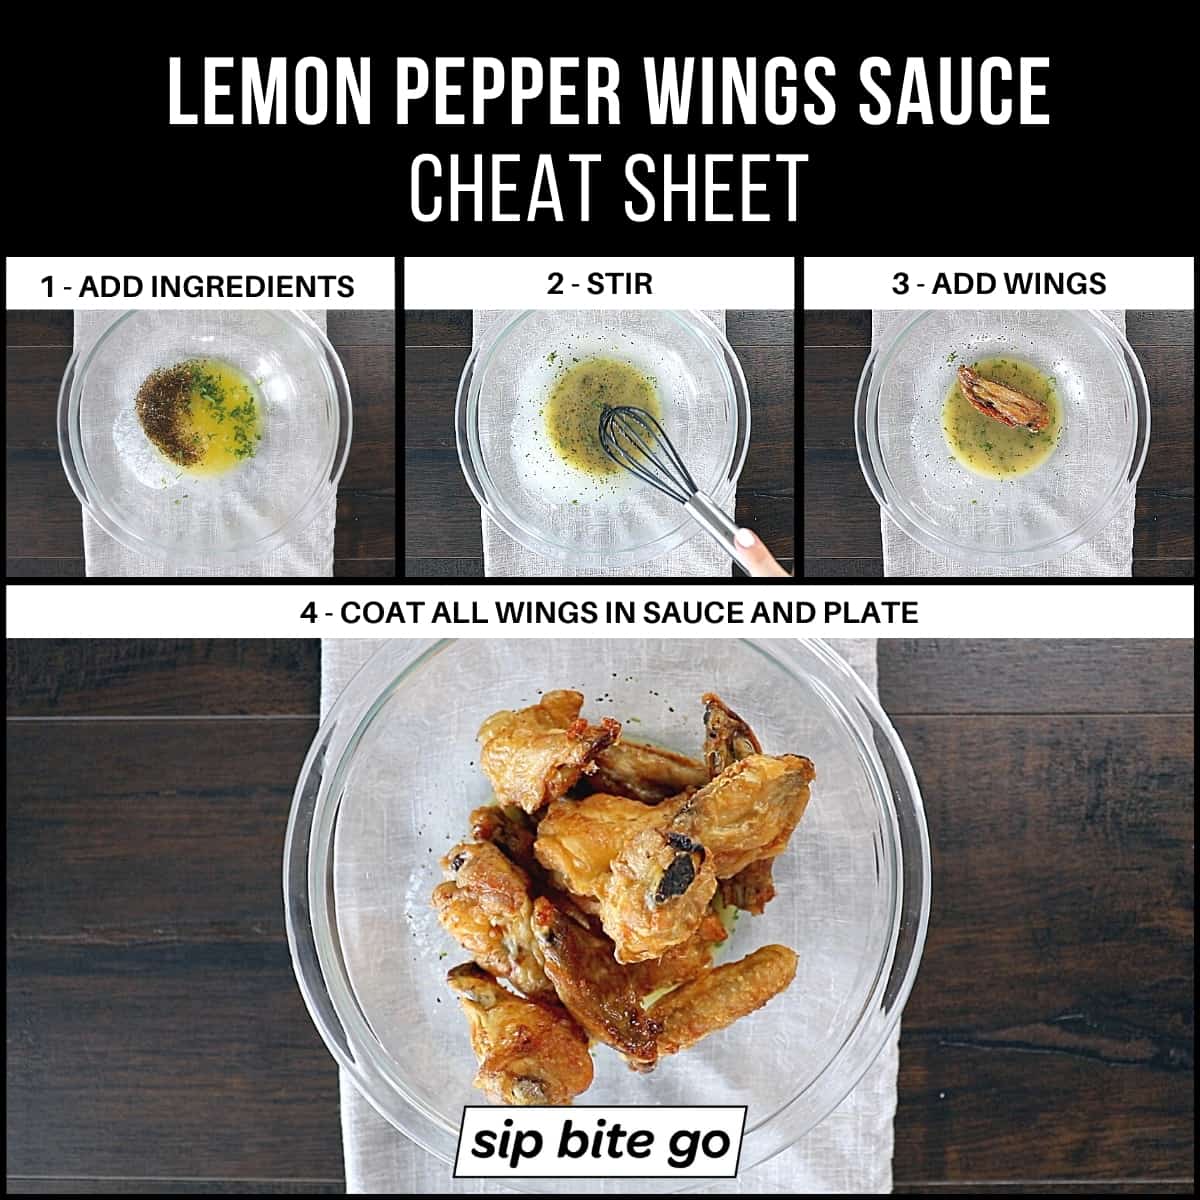 Steps to make lemon pepper wings sauce.